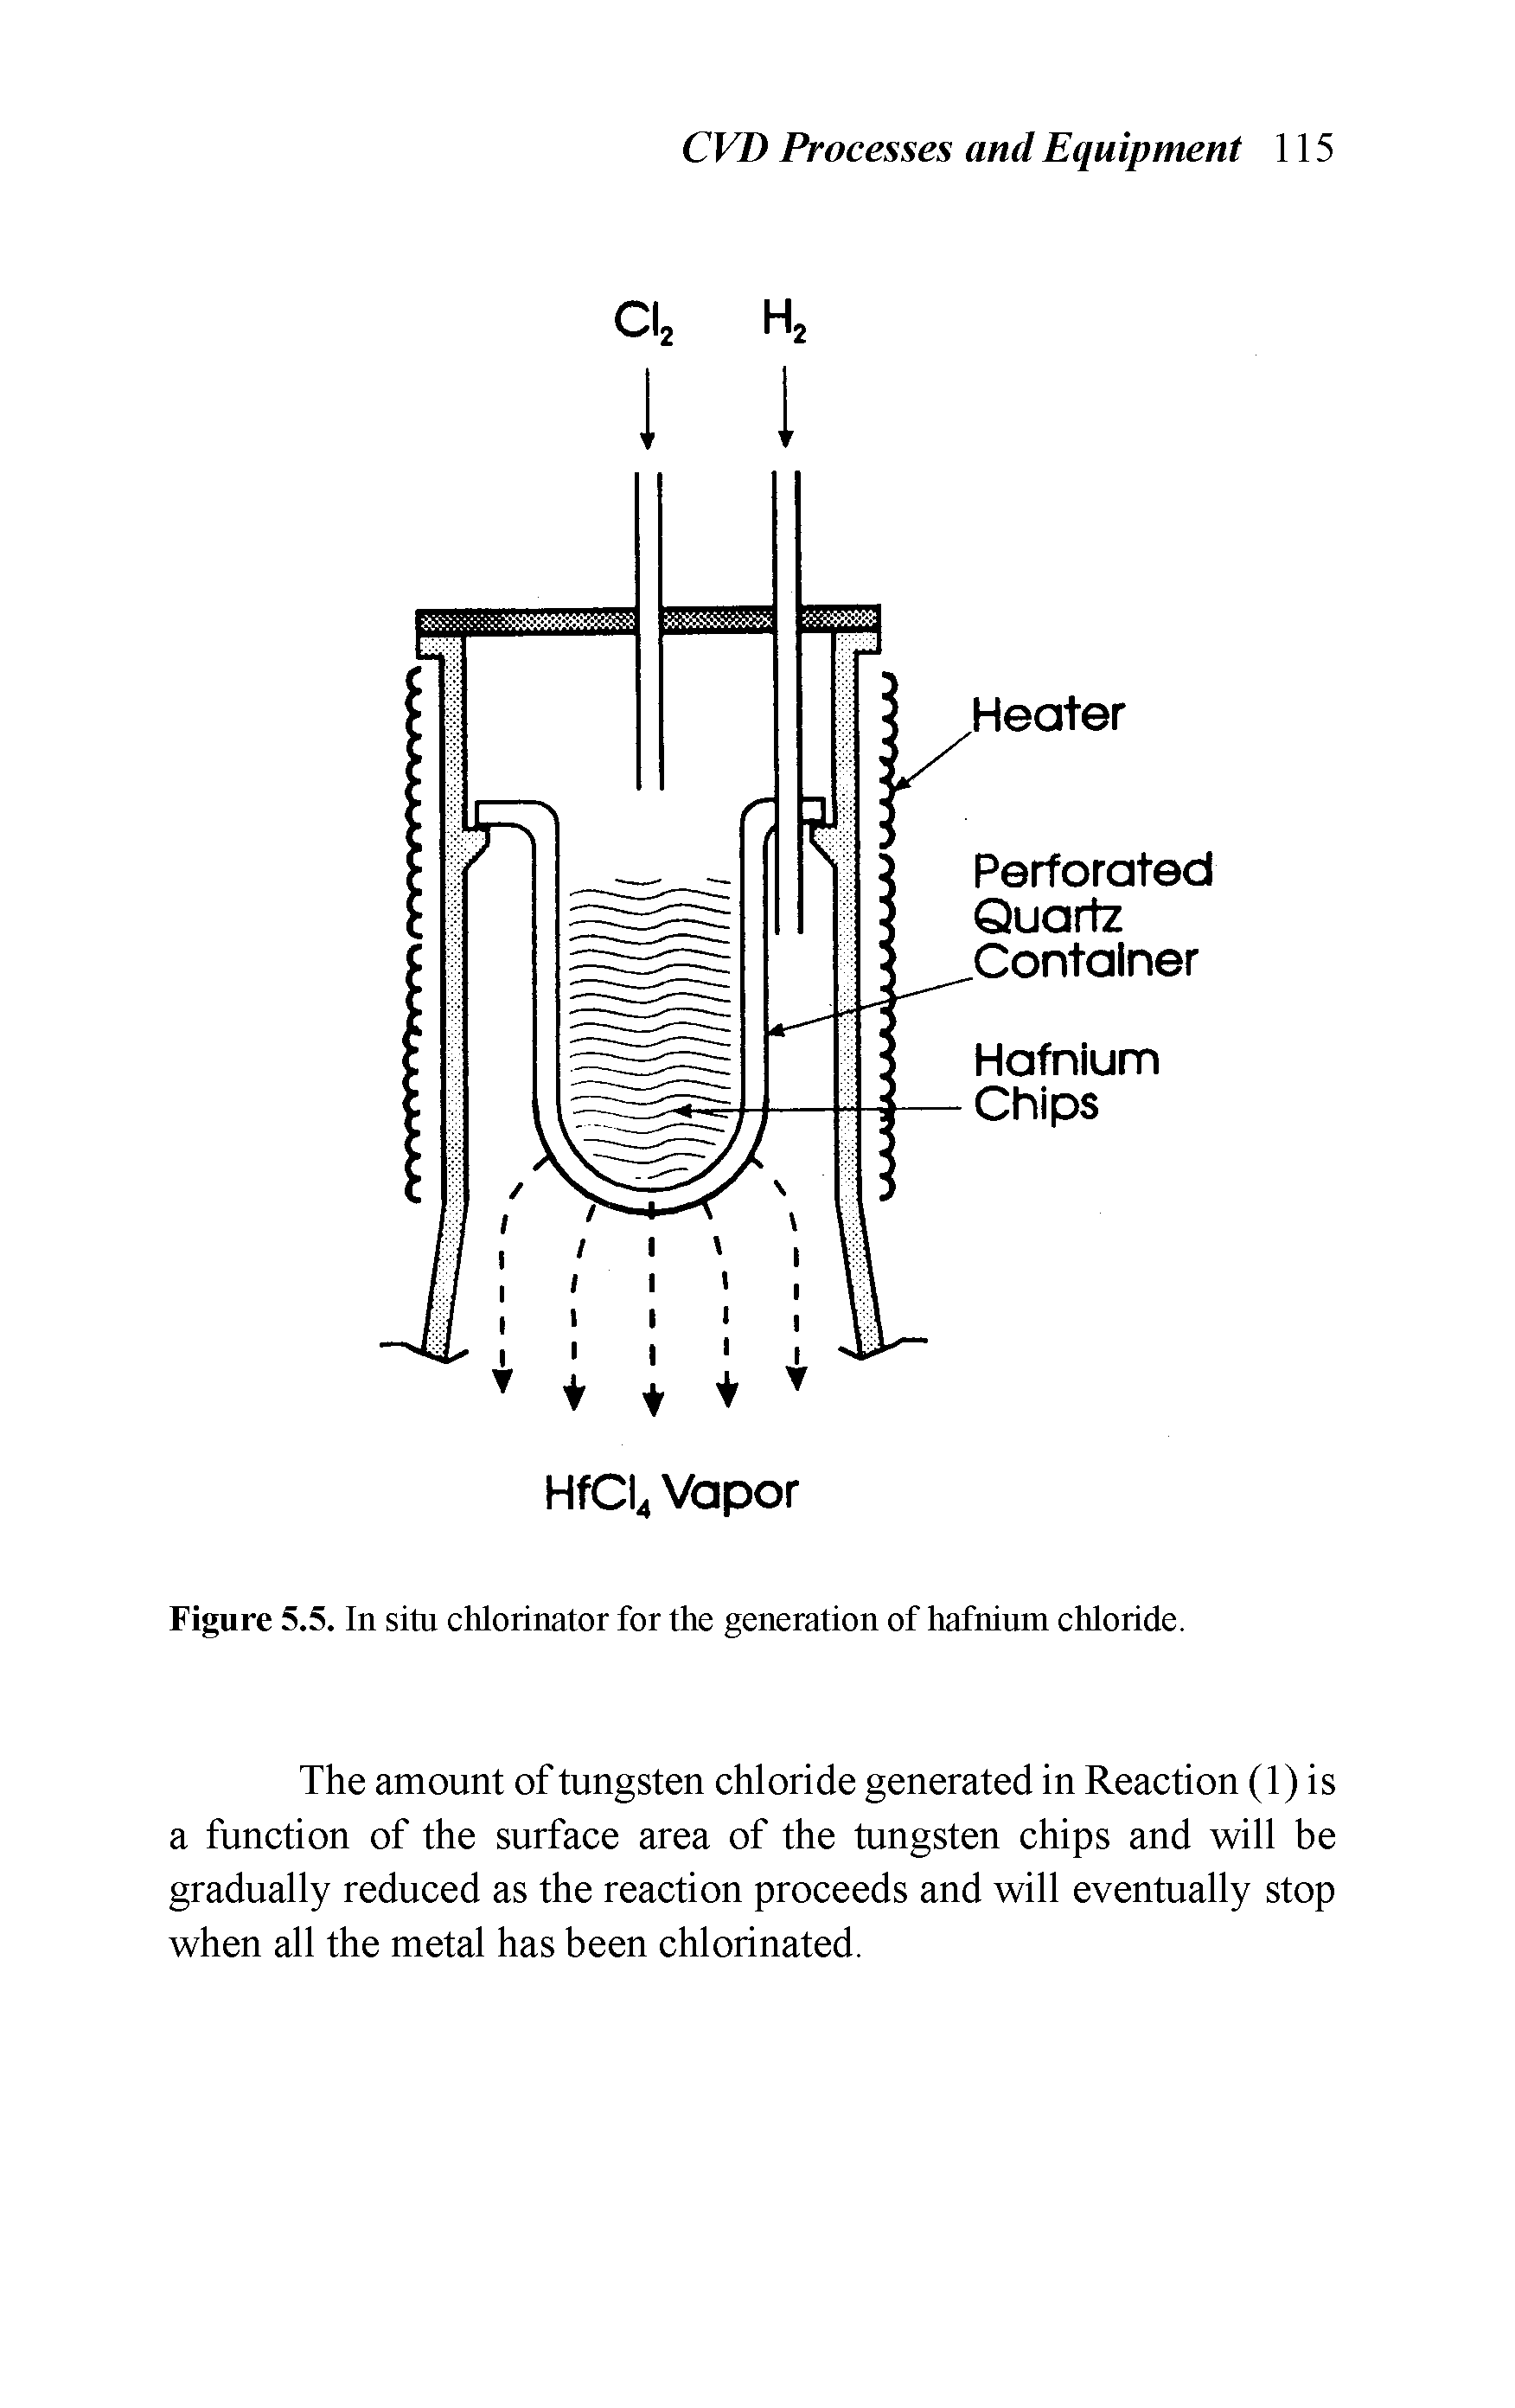 Figure 5.5. In situ chlorinator for the generation of hafnium chloride.